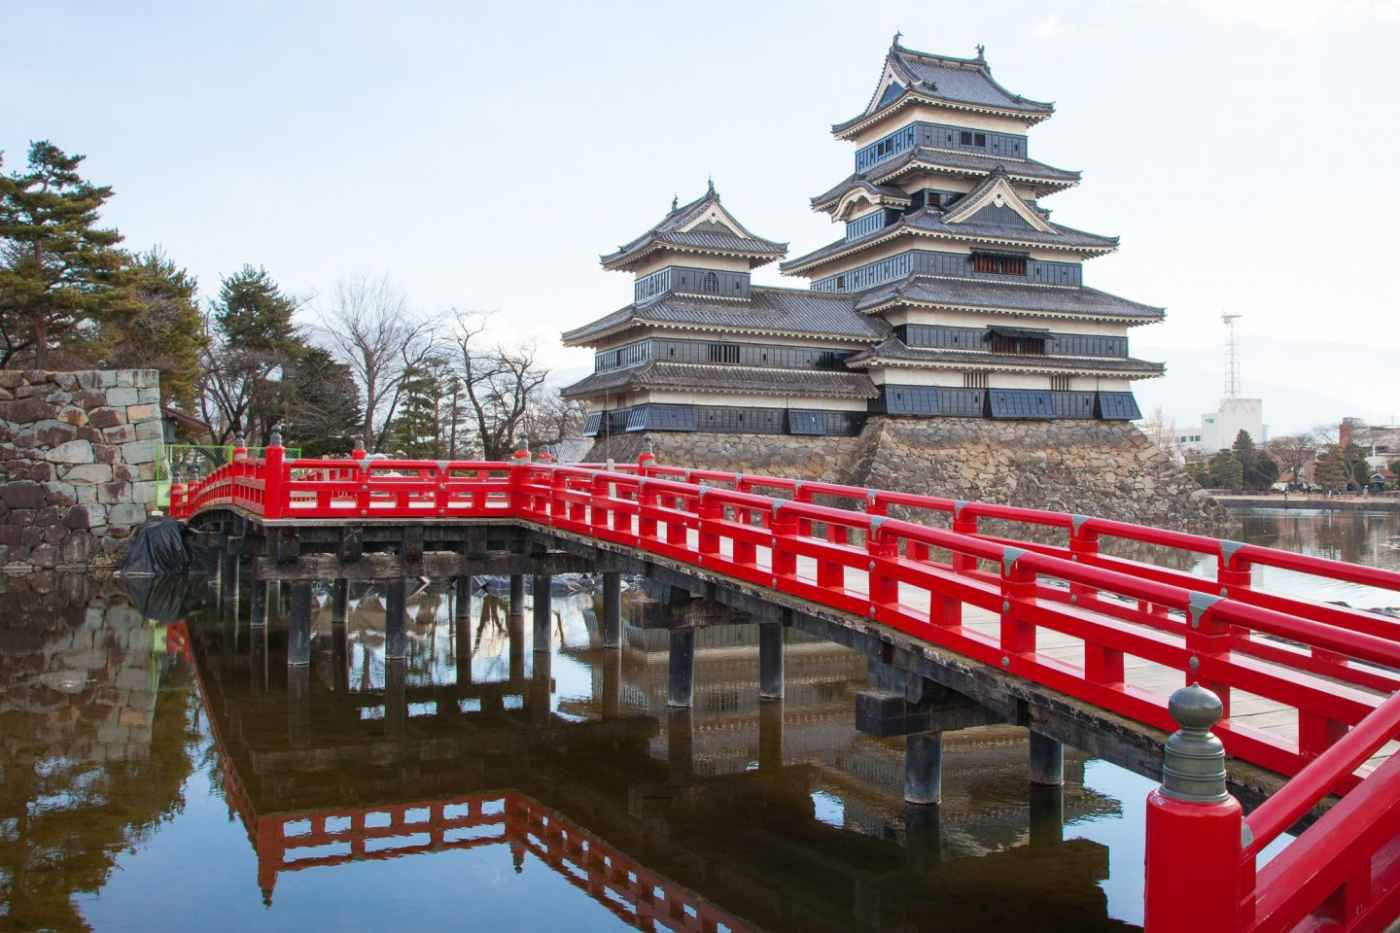 Du lịch Nhật Bản: Tỉnh Nagano mang vẻ đẹp bình yên đến lạ